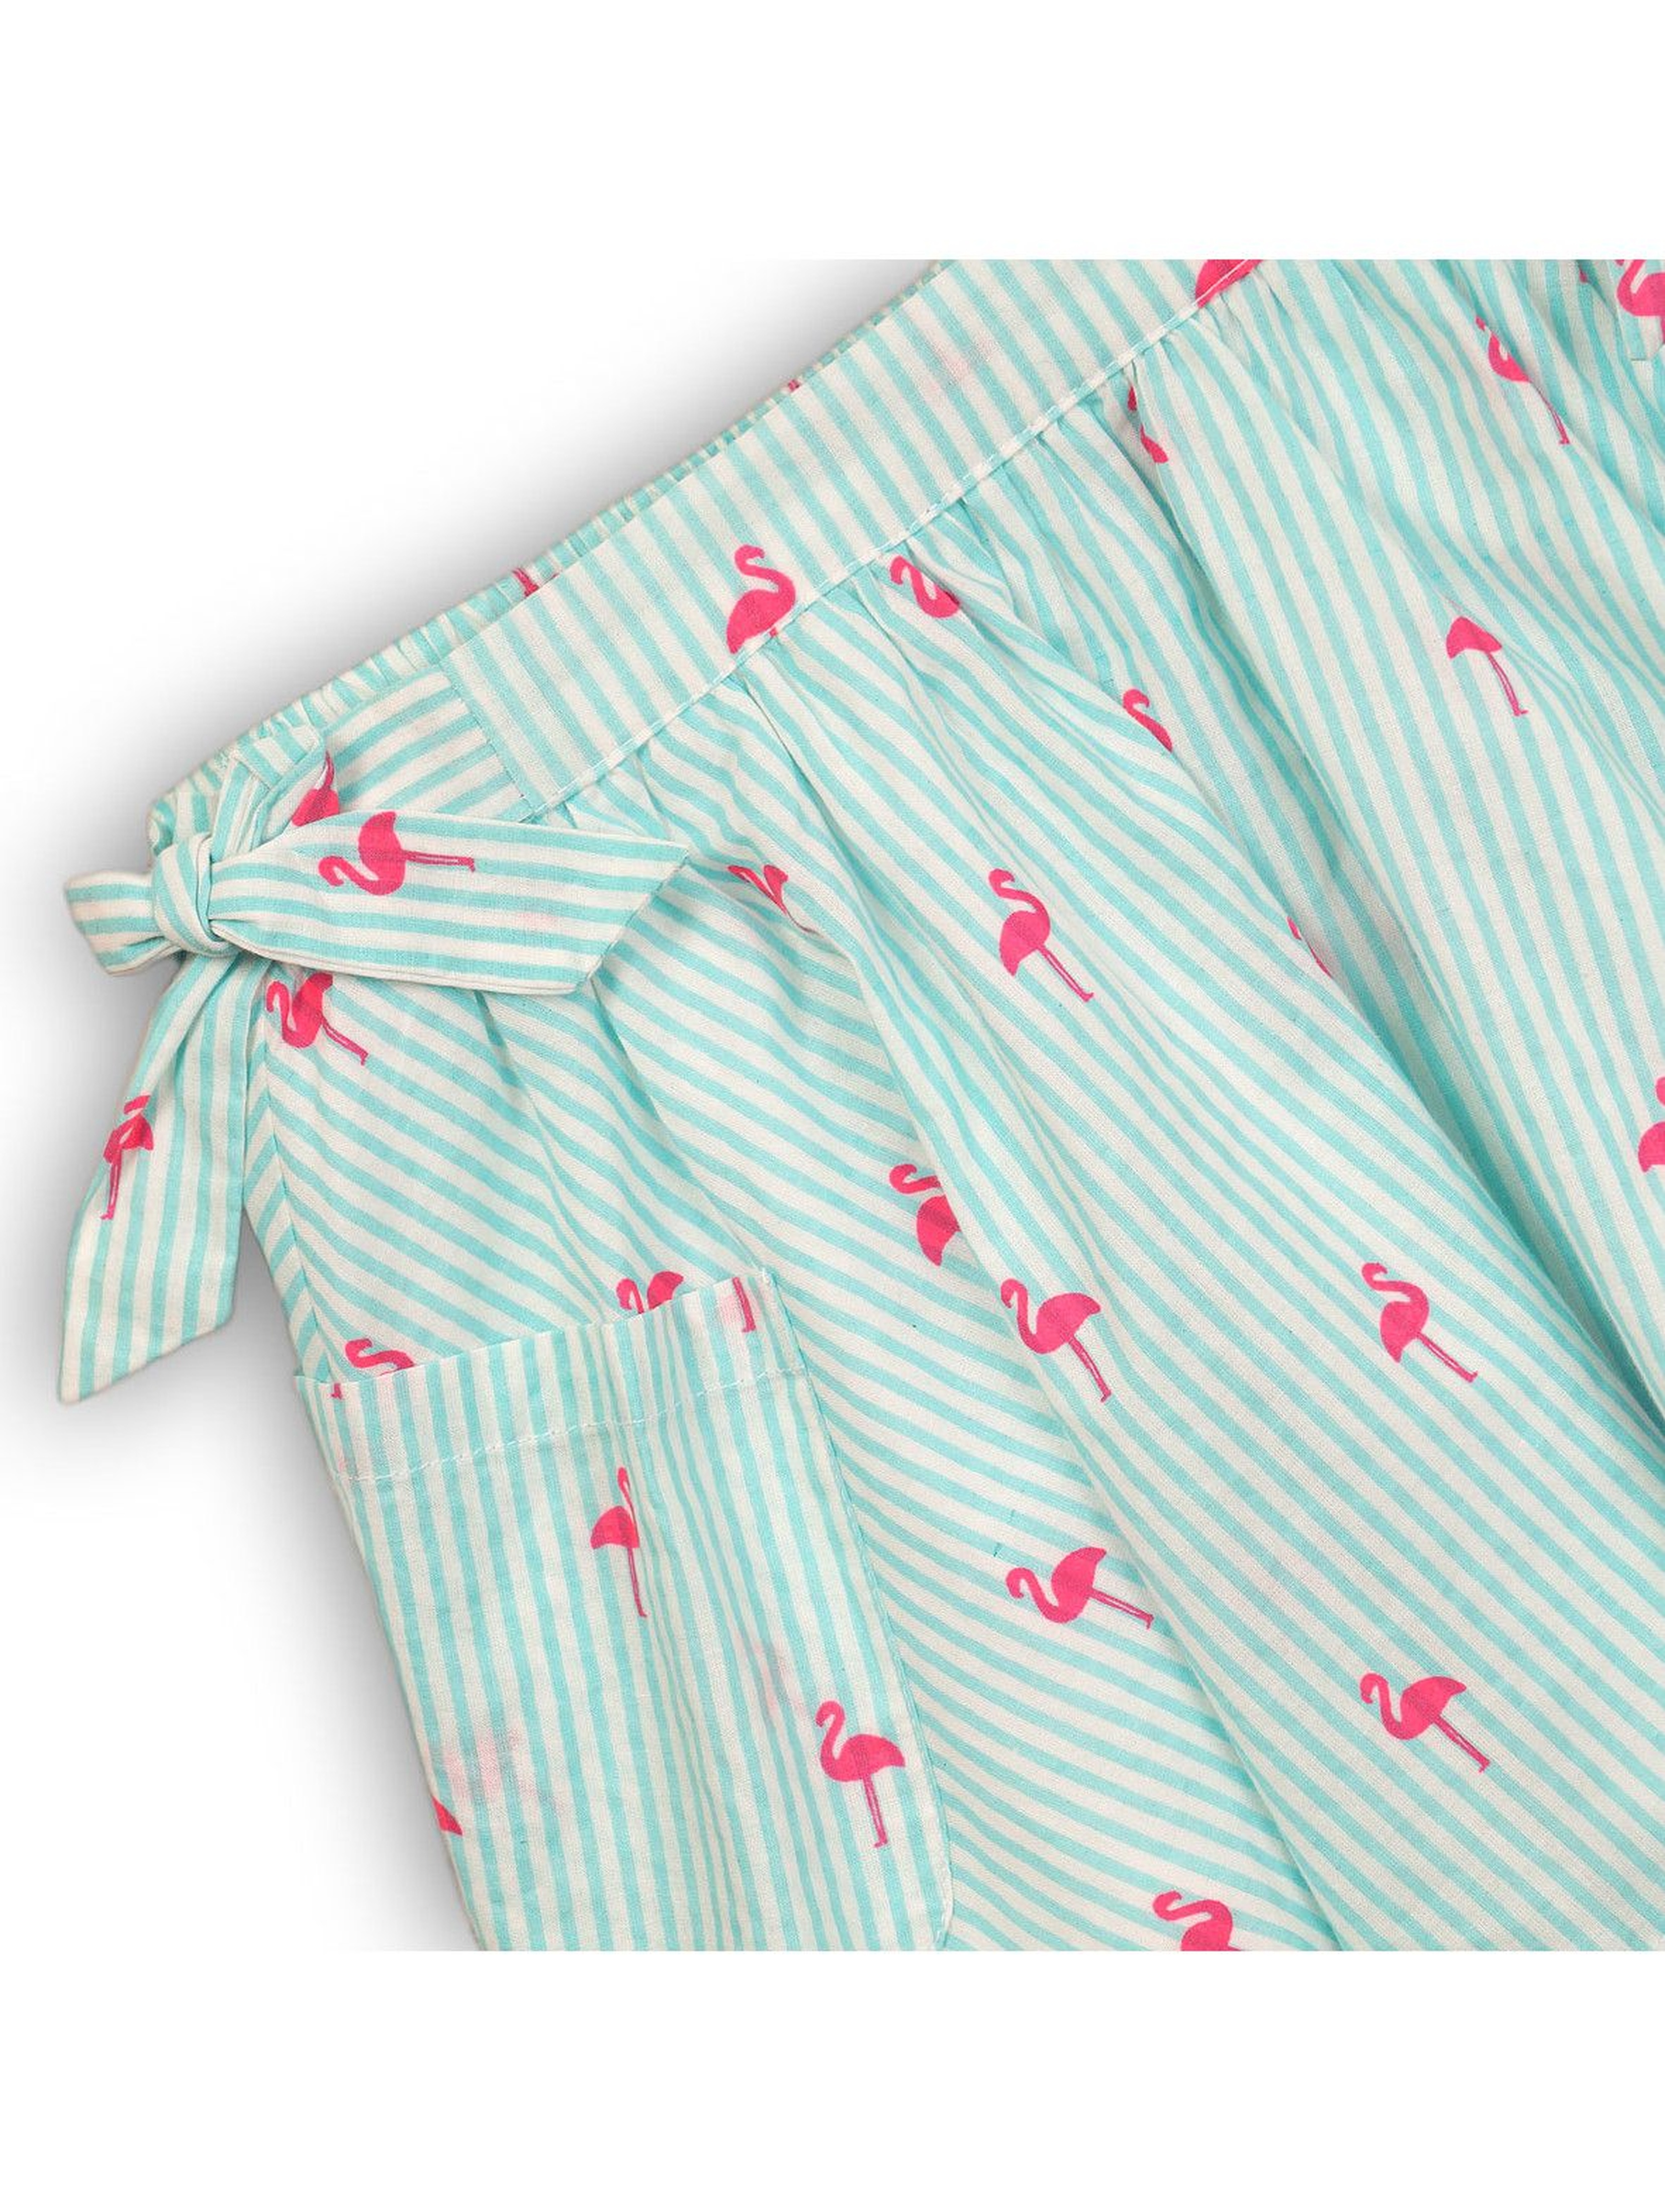 Spódnica dziewczęca na lato niebieska-flamingi